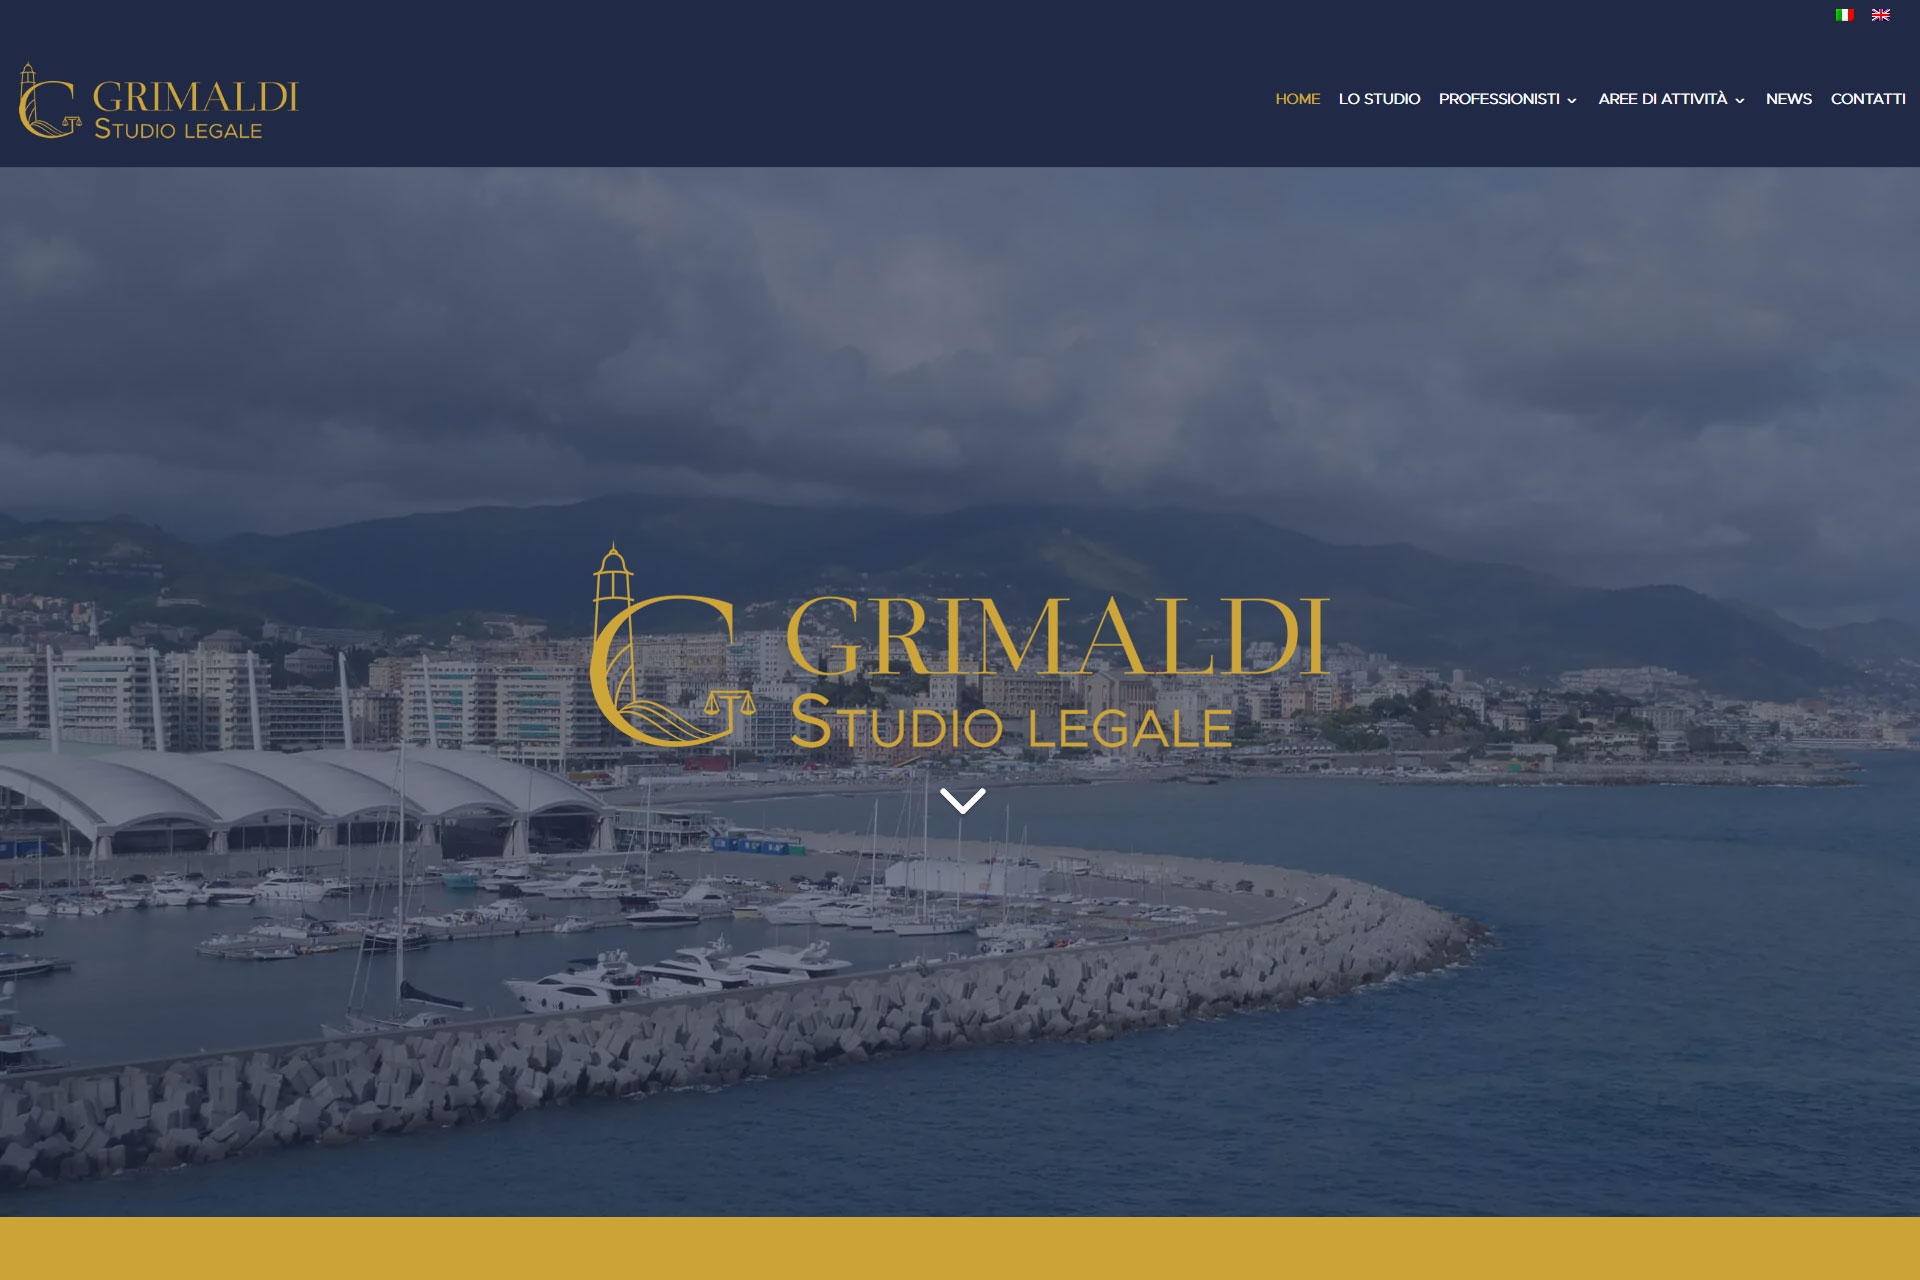 Grimaldi Studio Legale Sito Web